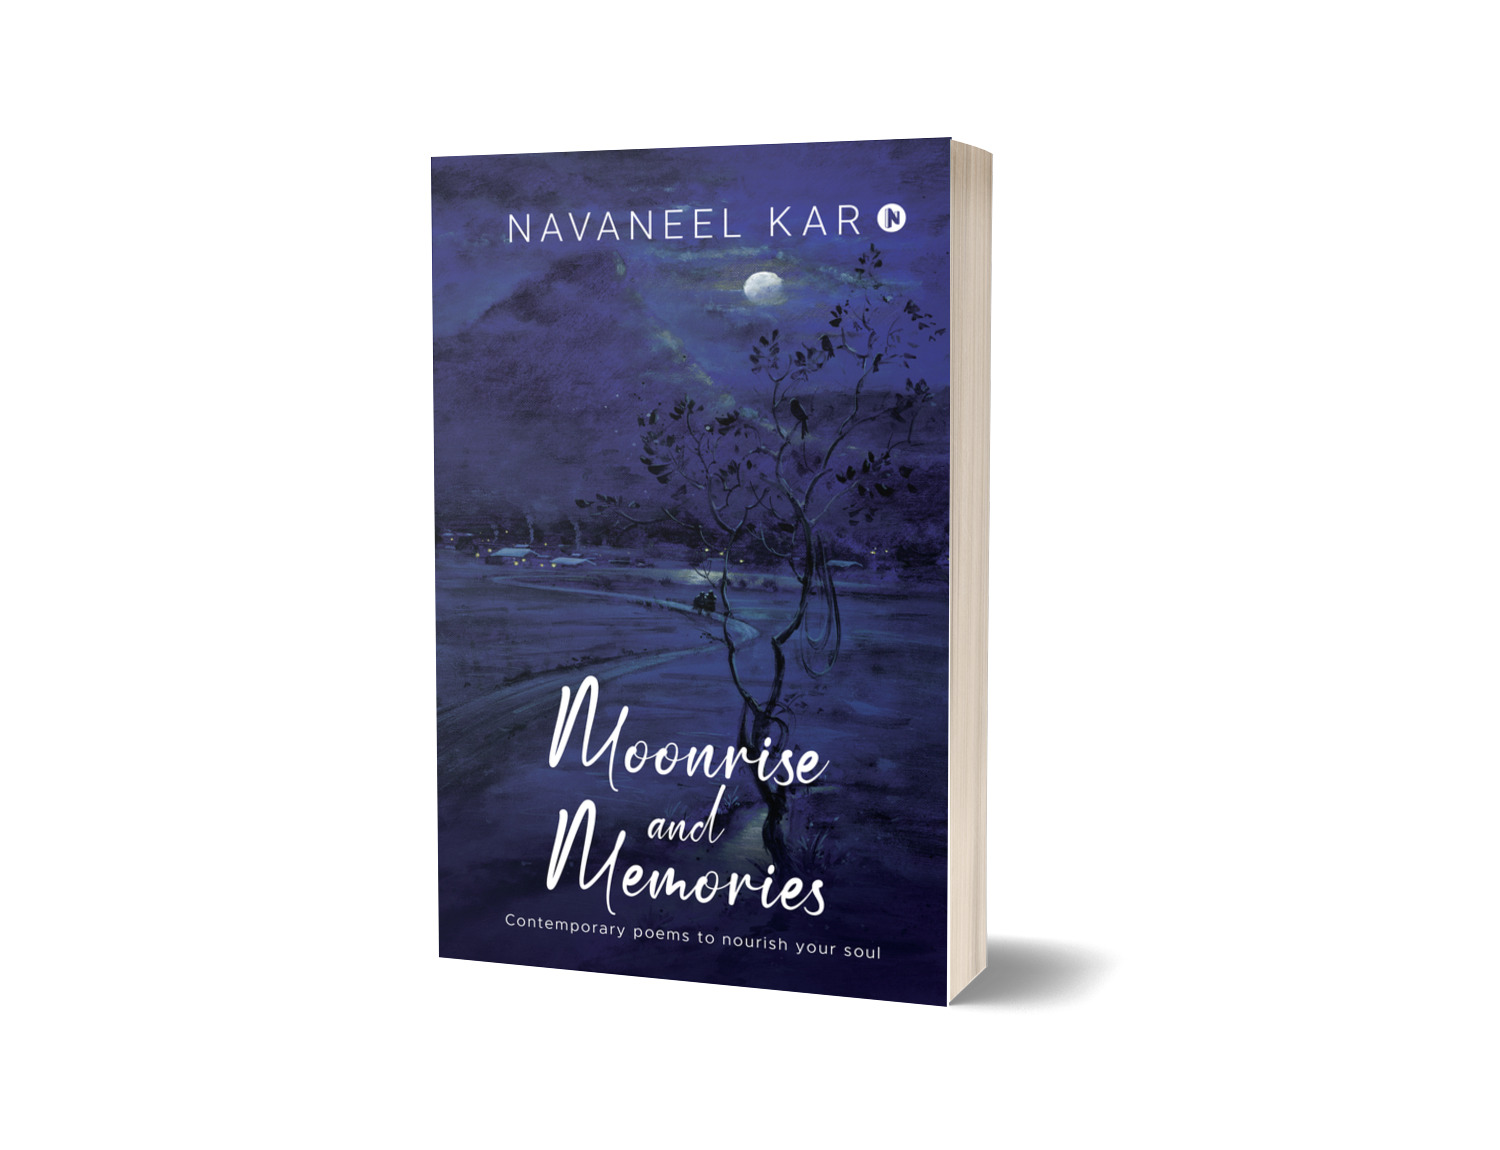 Moonrise and Memories by Navaneel Kar